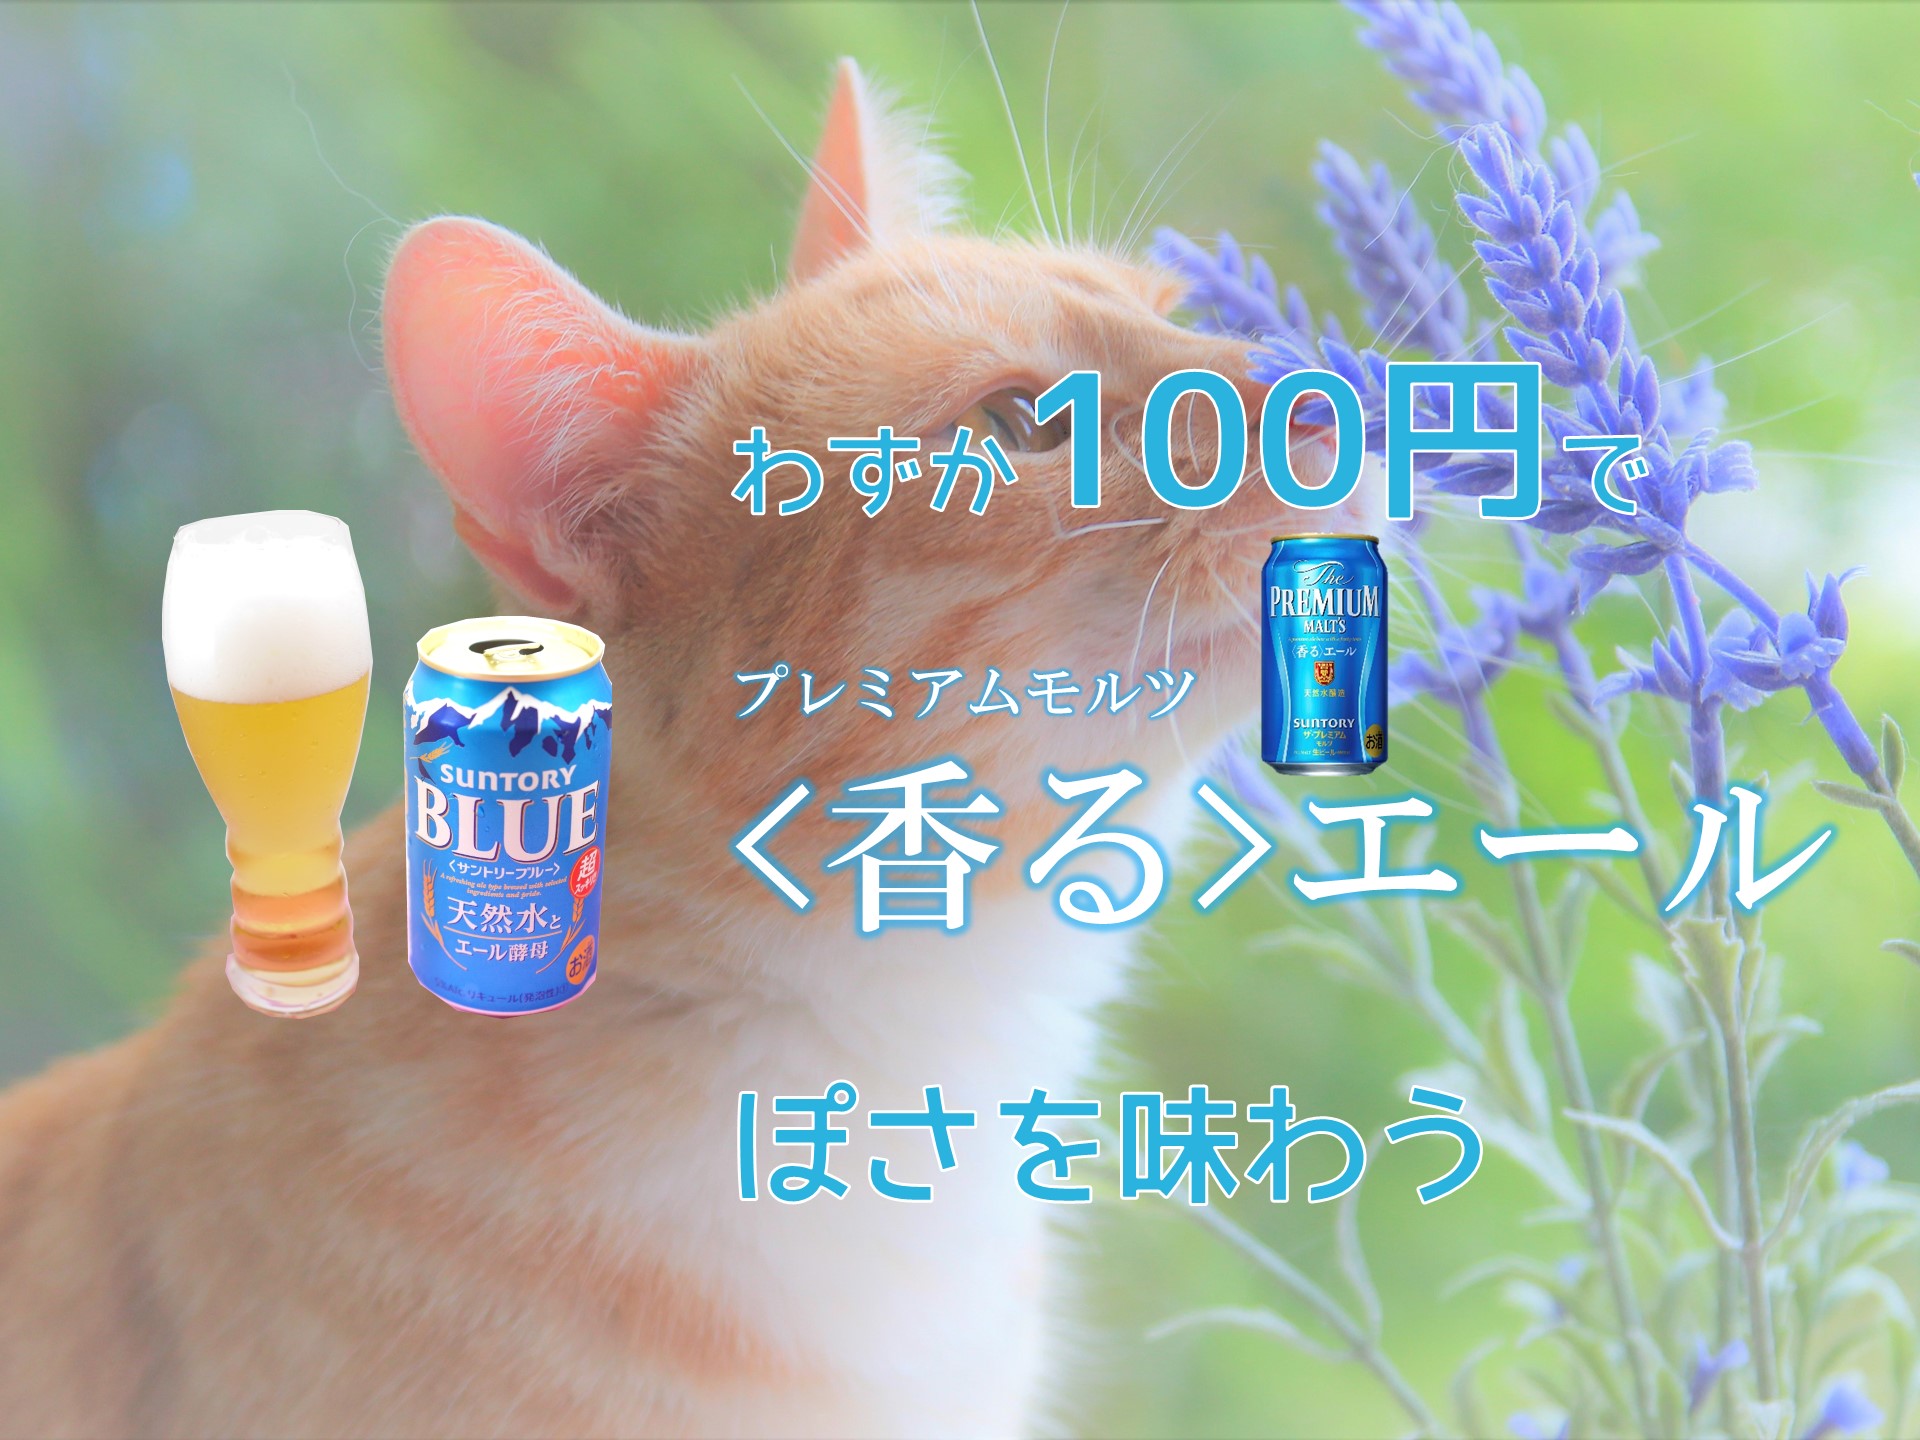 サントリーブルー の詳細情報 Beer Press Japan